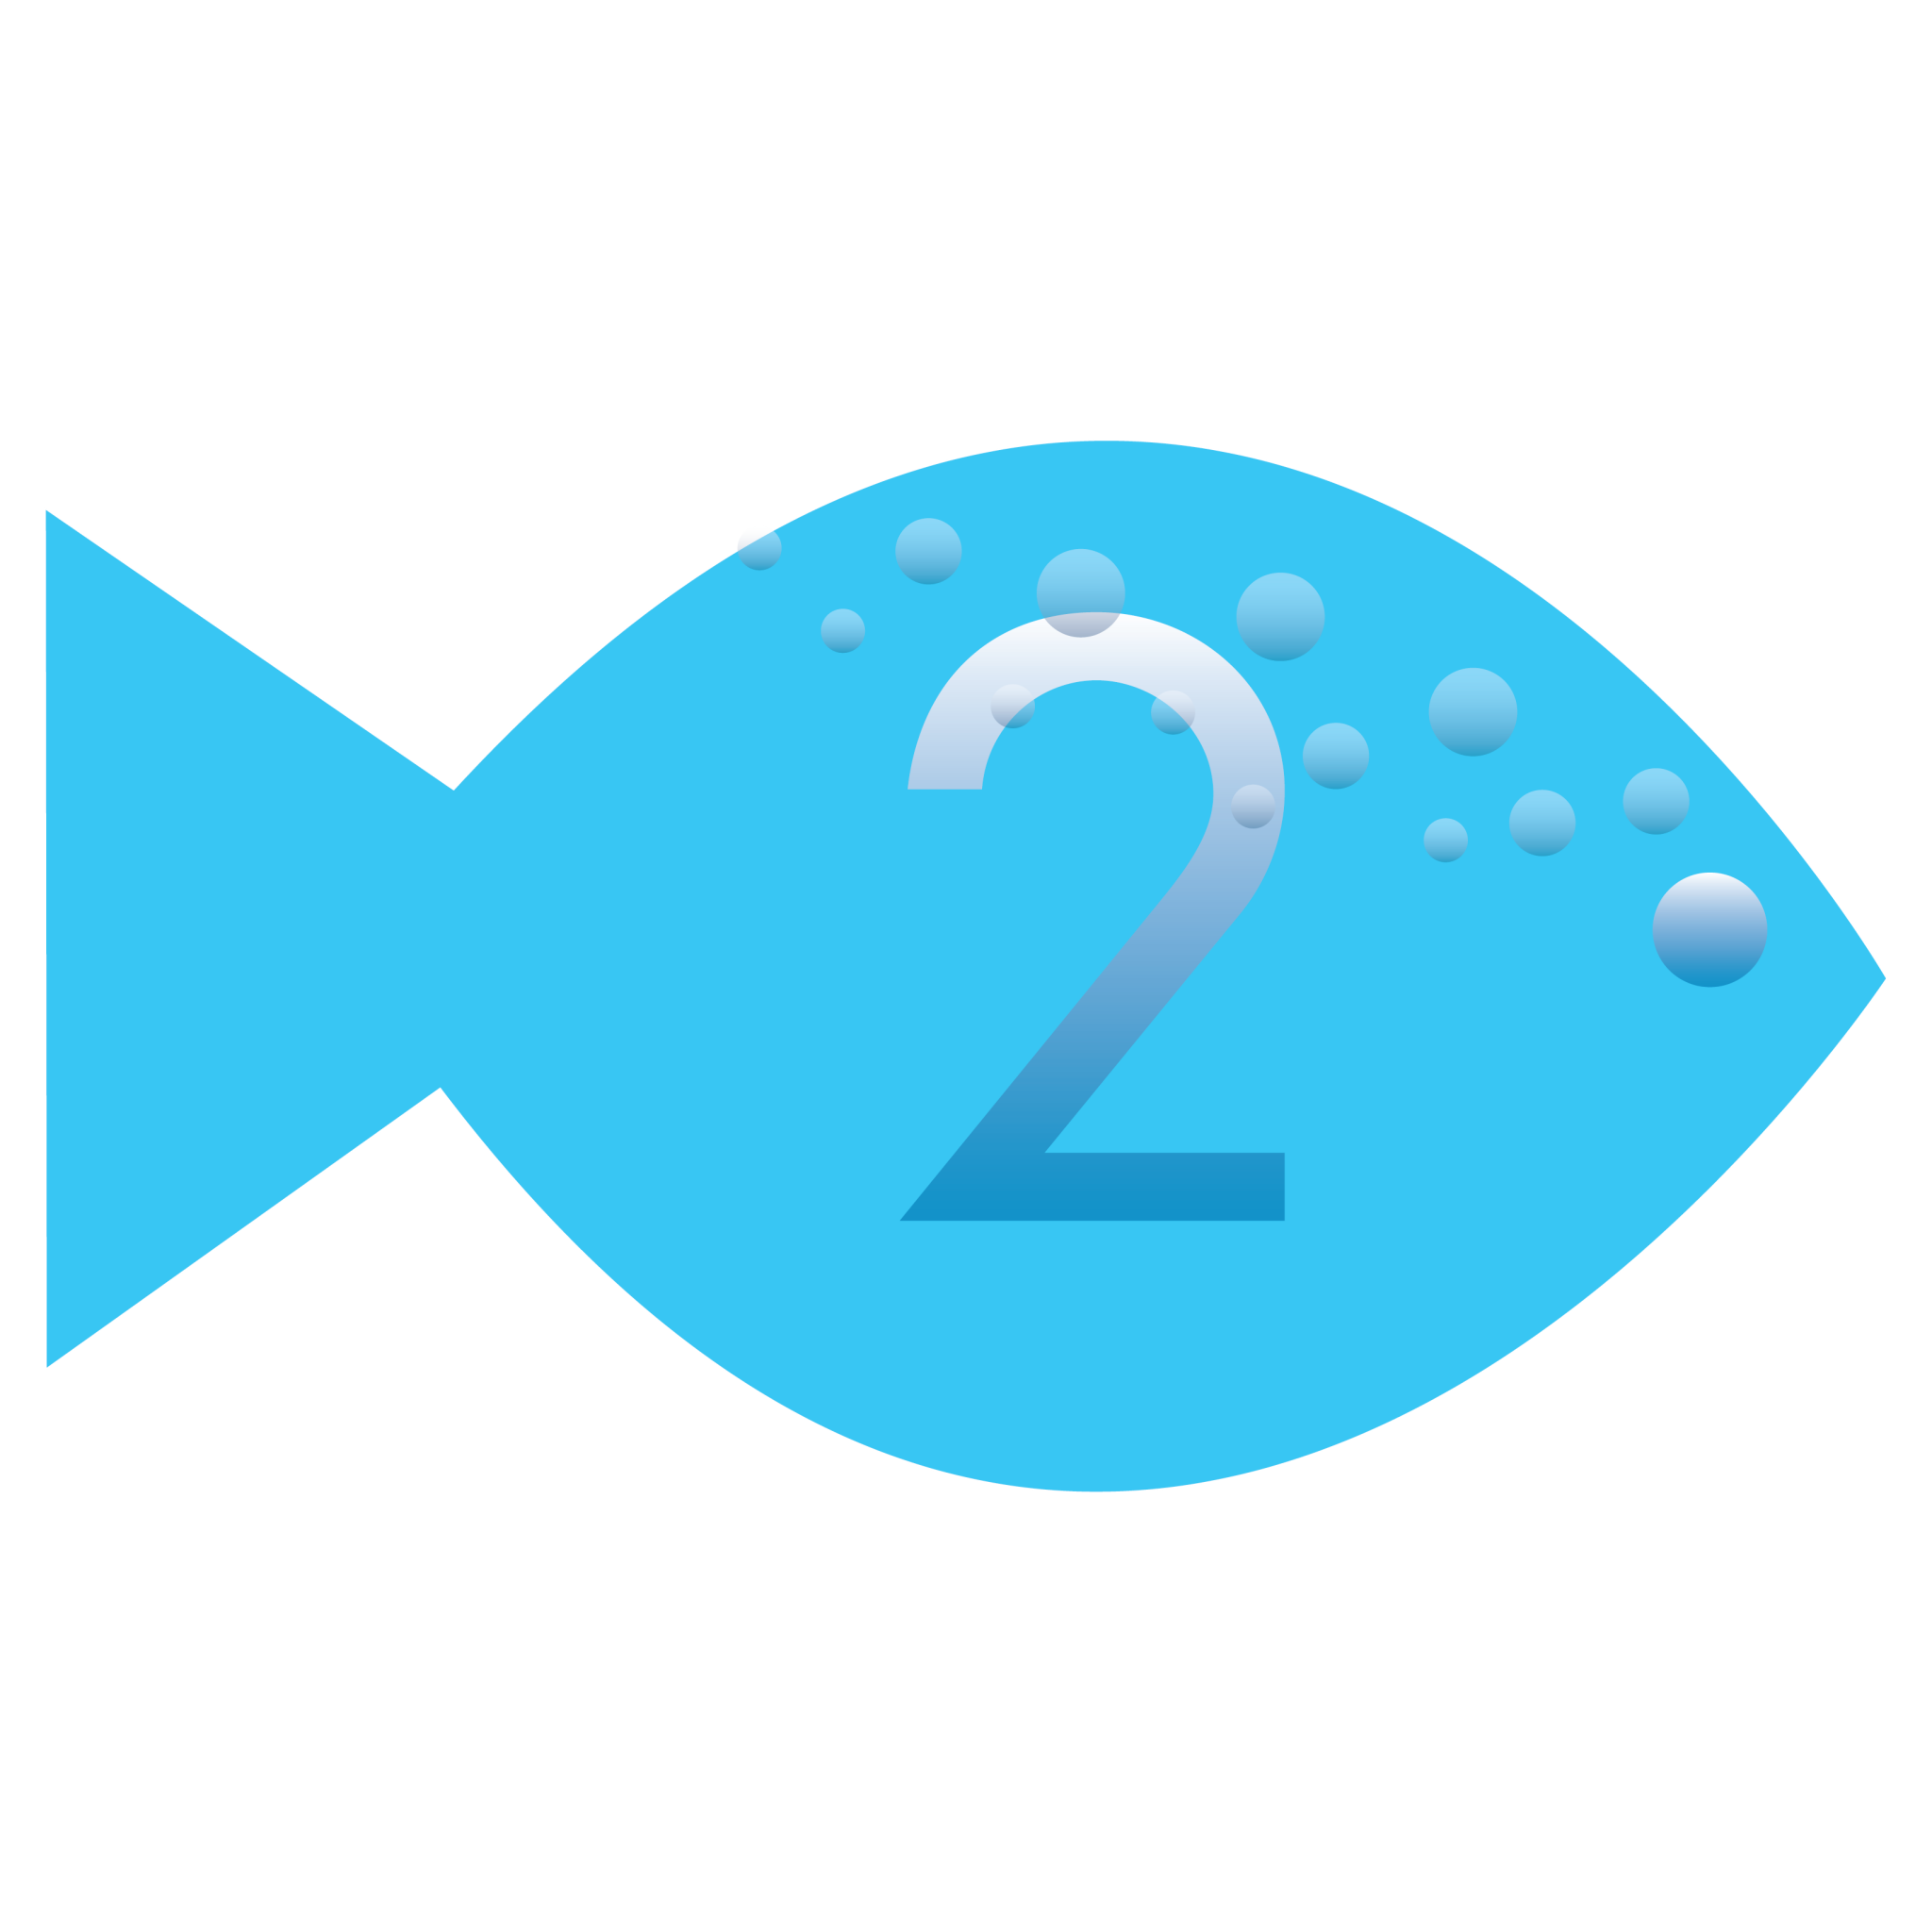 two fish bakery logo app